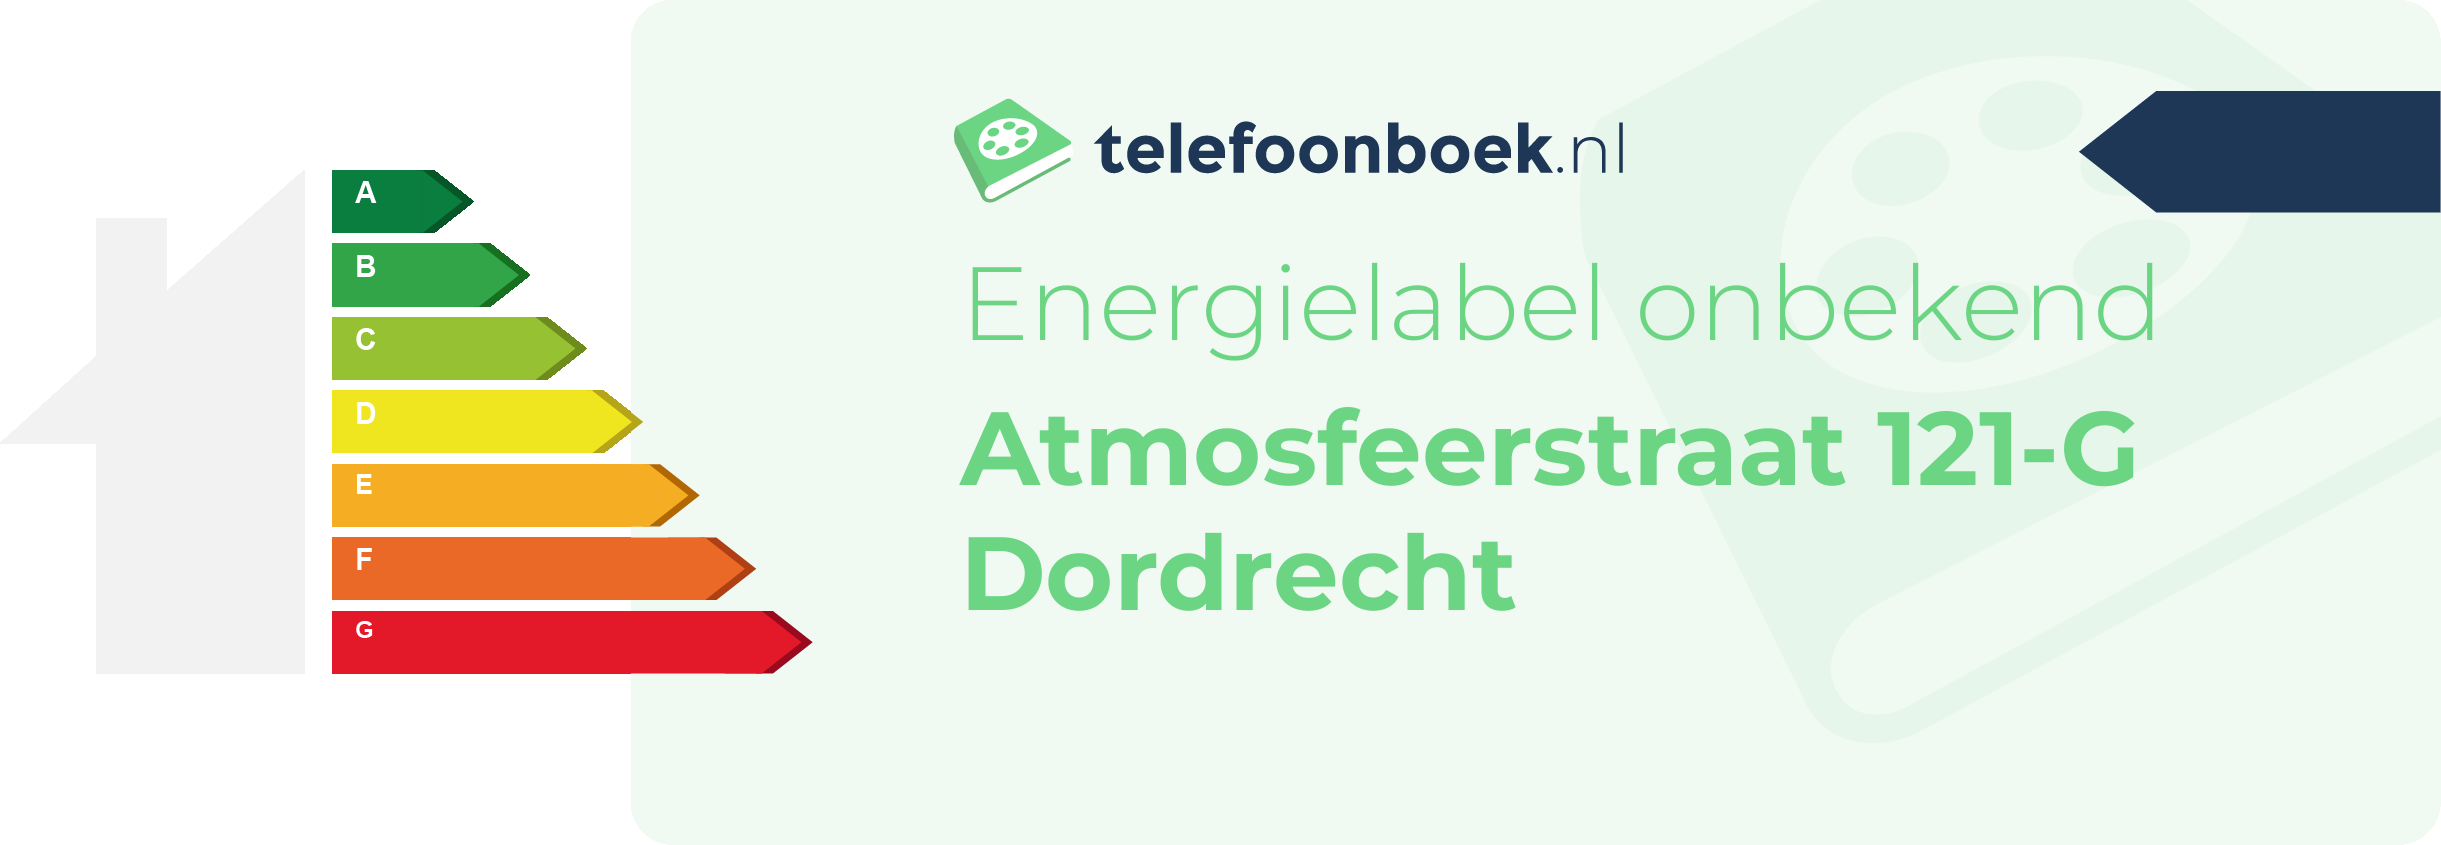 Energielabel Atmosfeerstraat 121-G Dordrecht